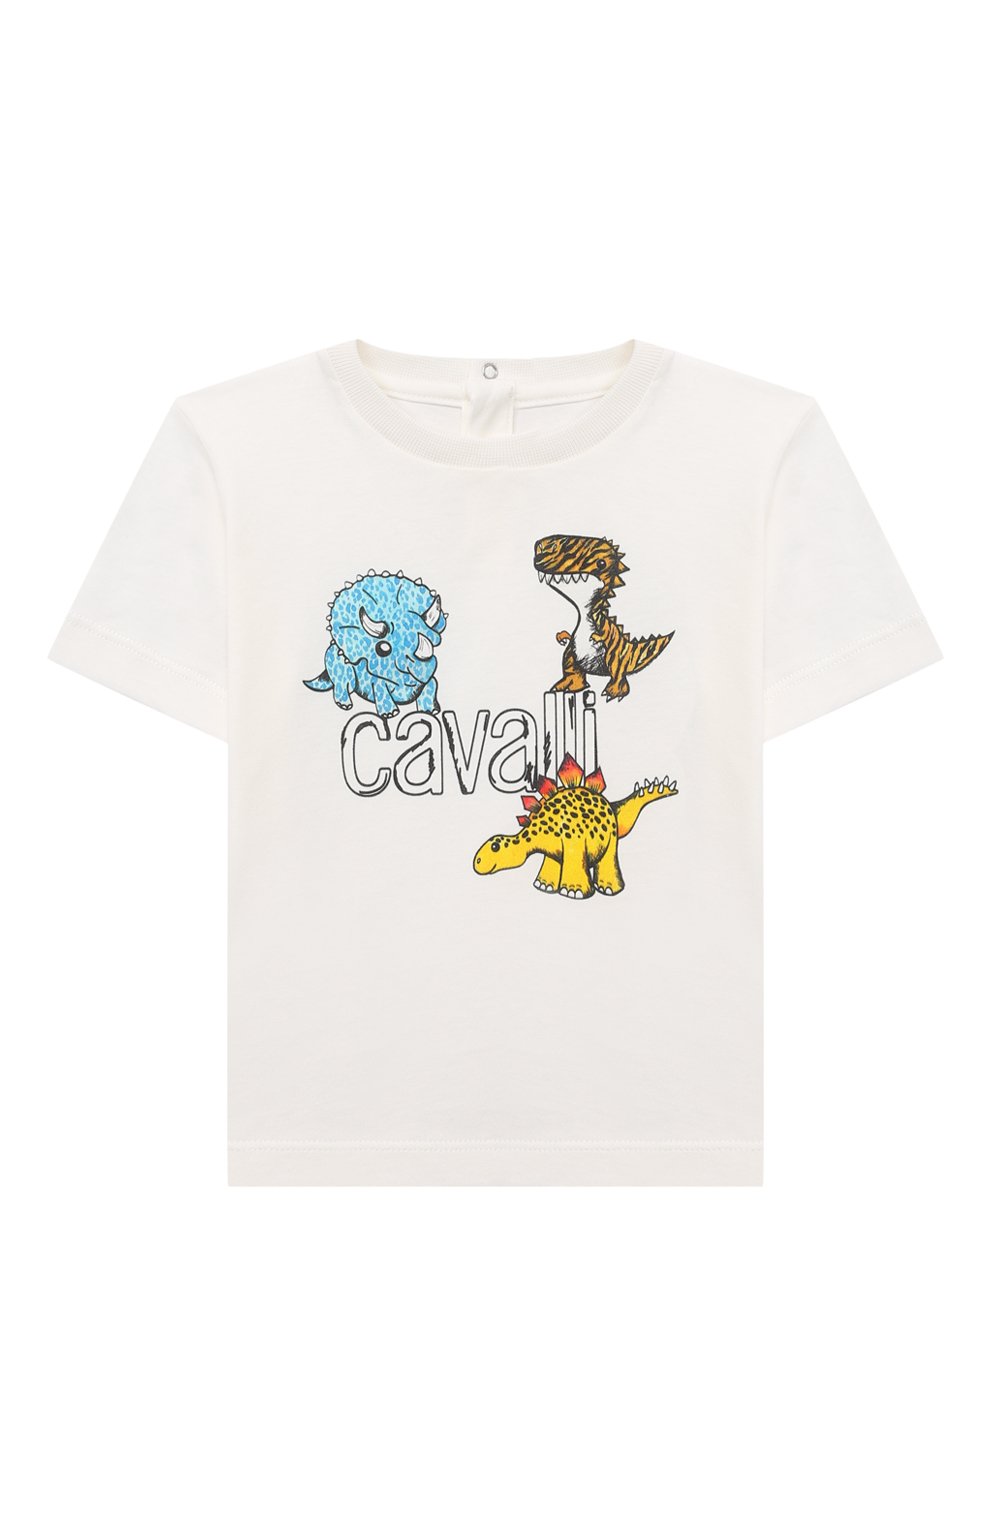 Топы Roberto Cavalli, Хлопковая футболка Roberto Cavalli, Италия, Белый, Хлопок: 100%;, 13379513  - купить